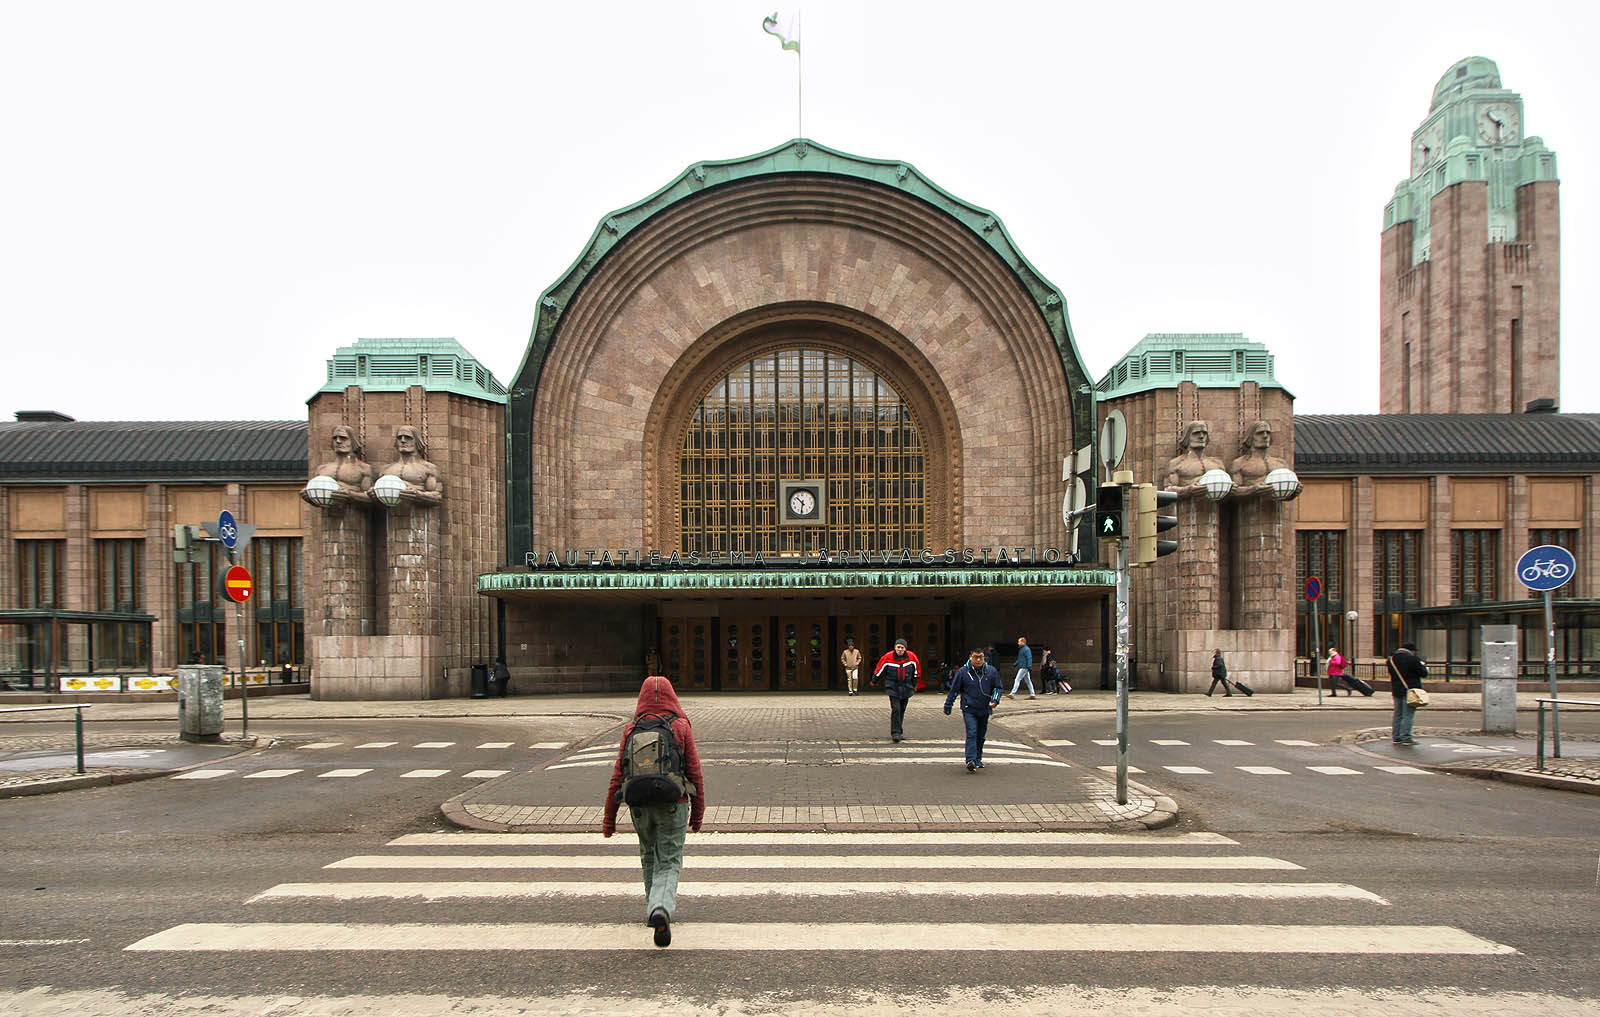 Hlavní nádraží v Helsinkách se jmenuje prostě Helsinki. Autorem návrhu netypické staniční budovy z roku 1919 je finský architekt Eliel Saarinen. Art nouveauový styl tak trošku připomíná těžkopádné stavby z prvního desetiletí samostatného Československa.